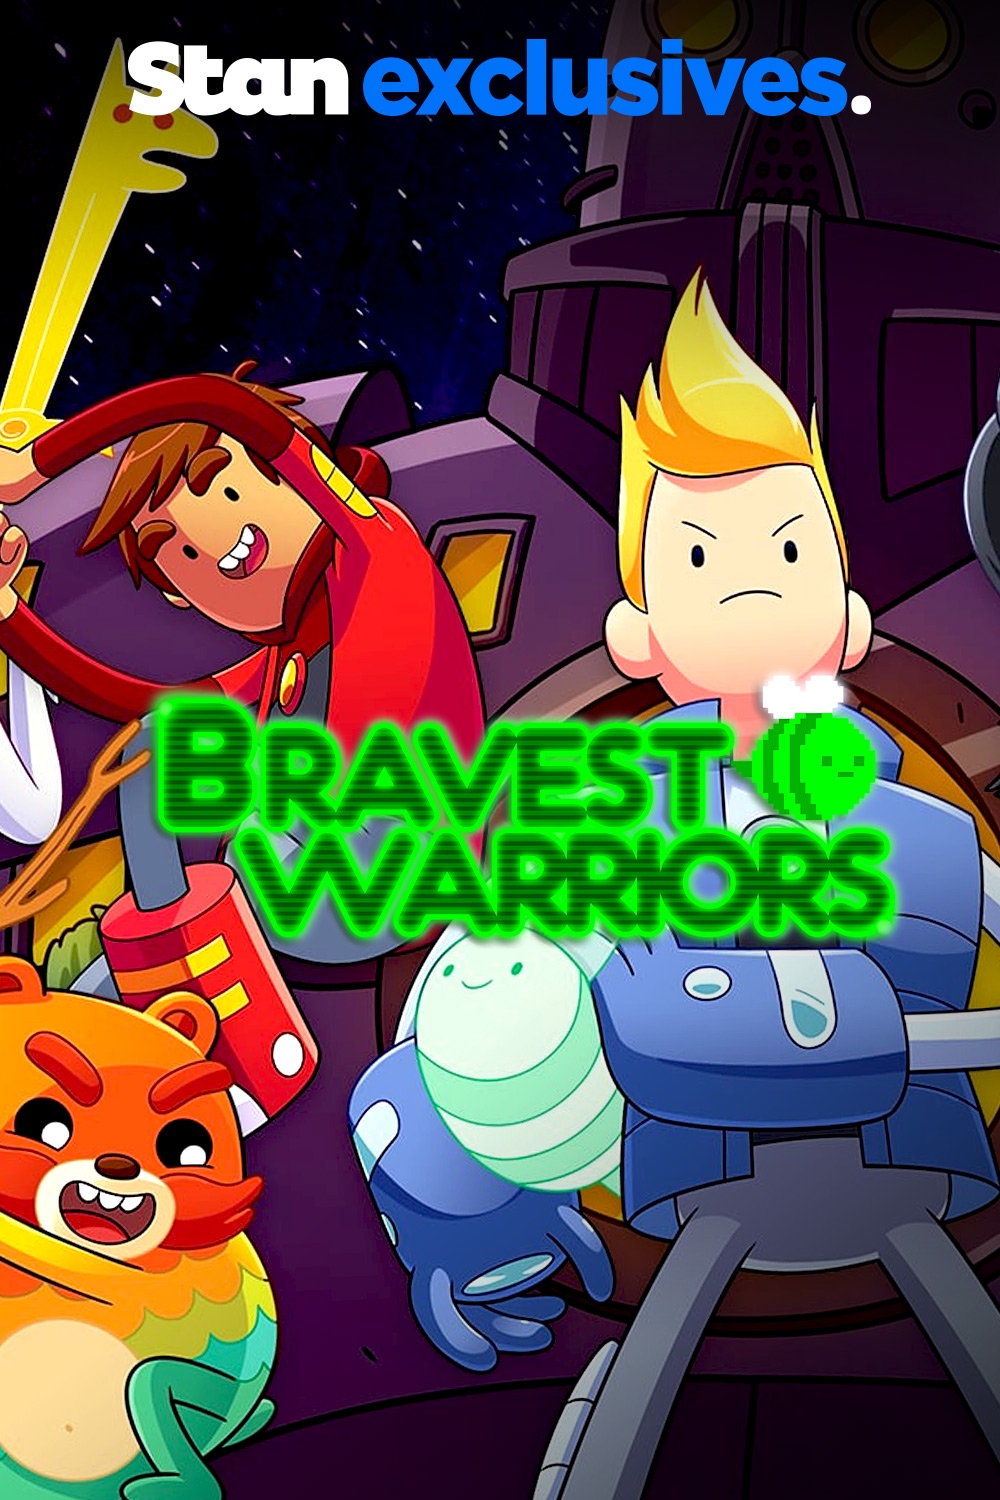 Bravest Warriors Season 4 - watch episodes streaming online